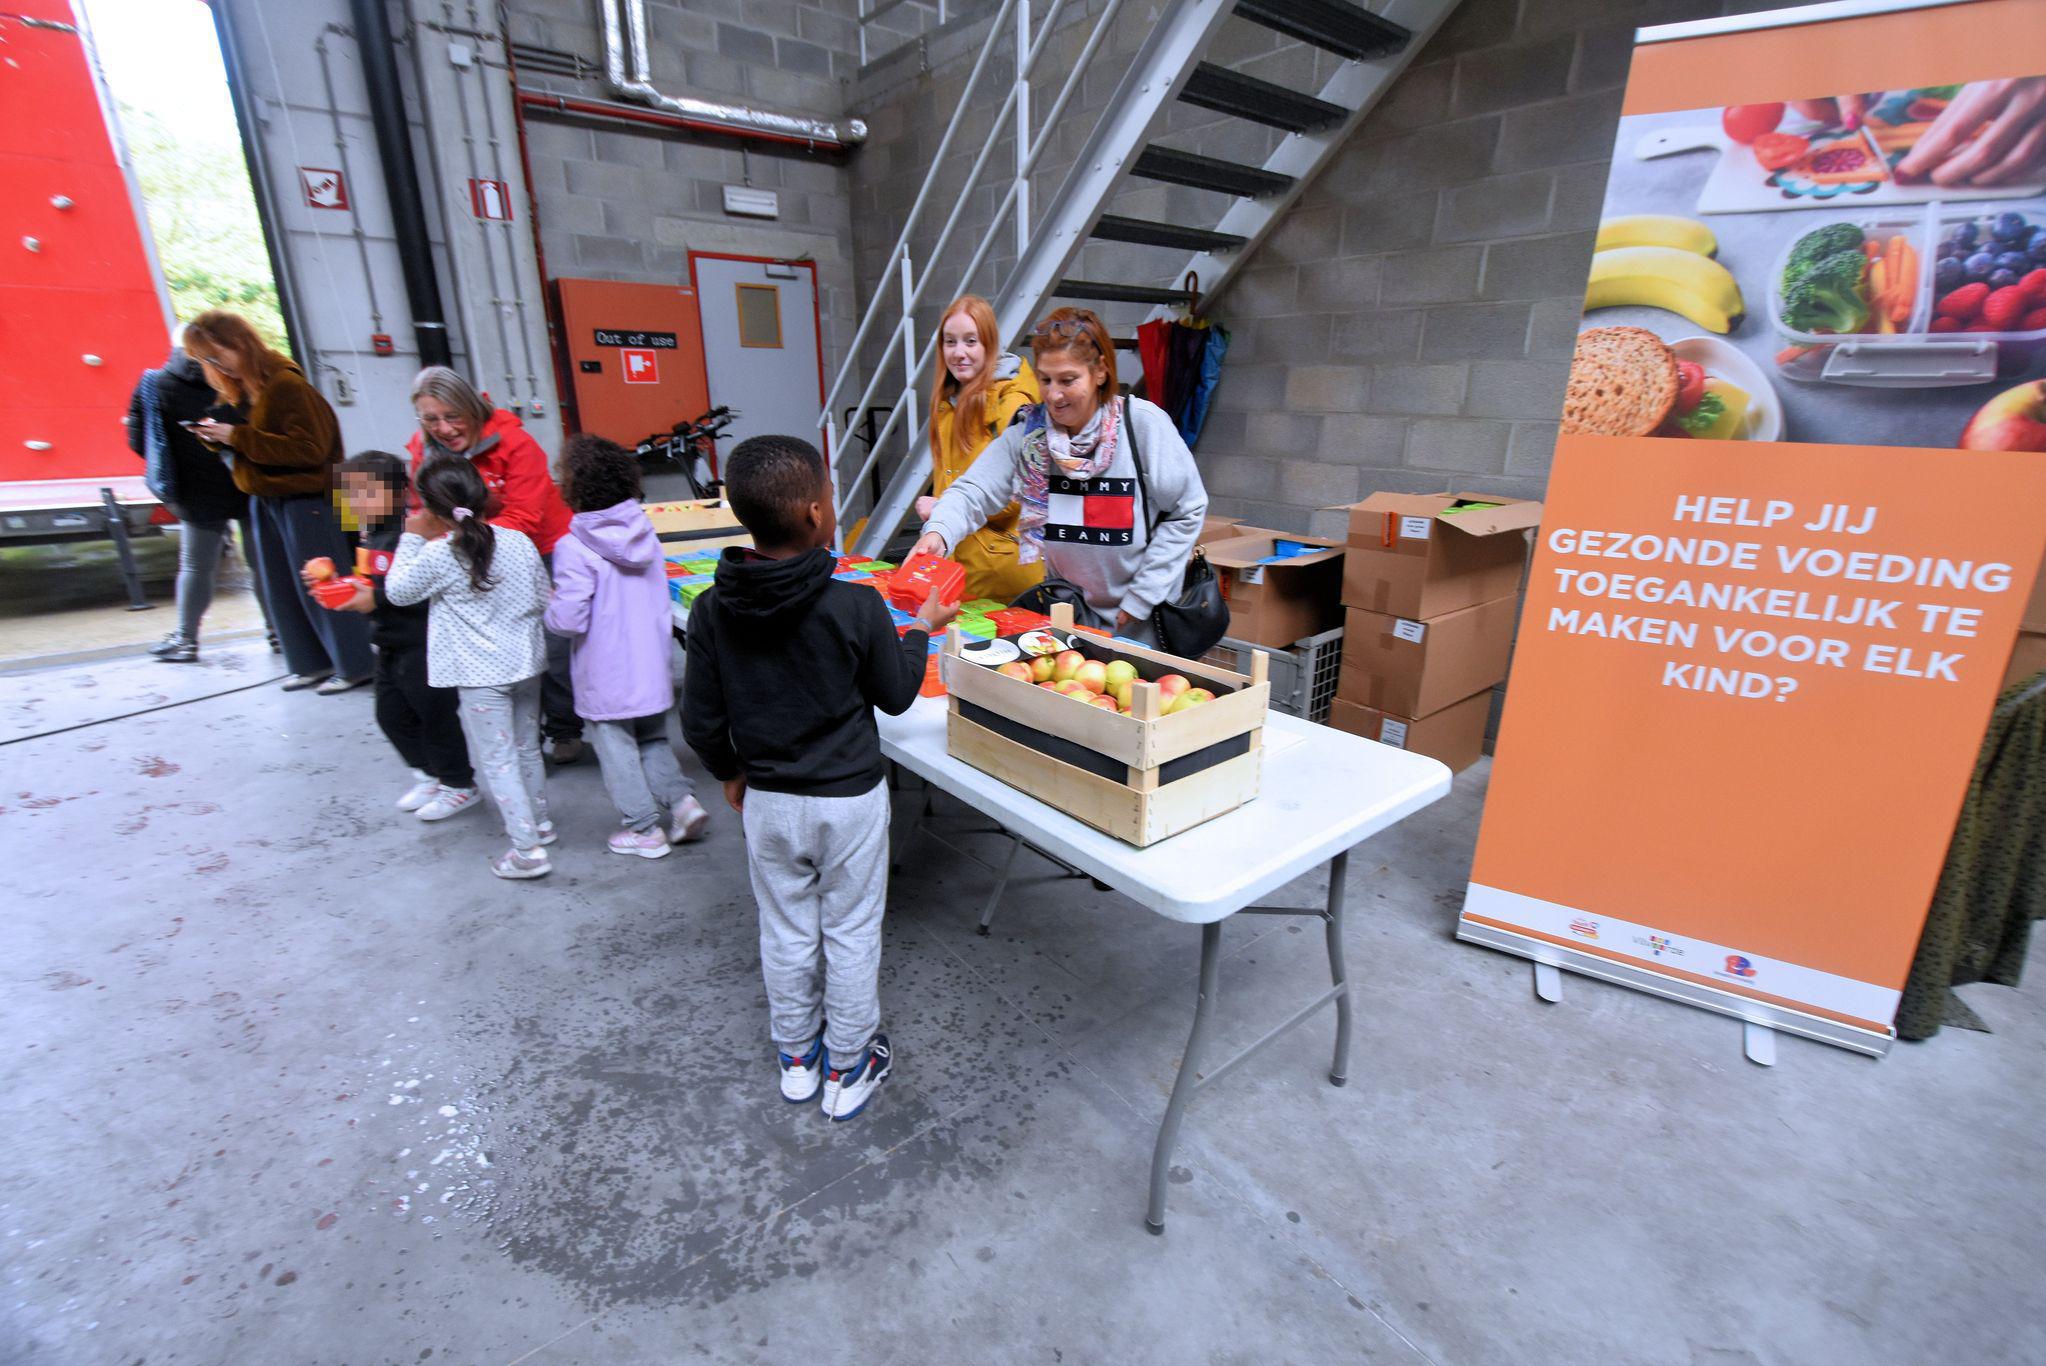 “Te veel kinderen met honger op de schoolbanken”, dus wil stad gezonde voeding toegankelijk maken voor alle kinderen